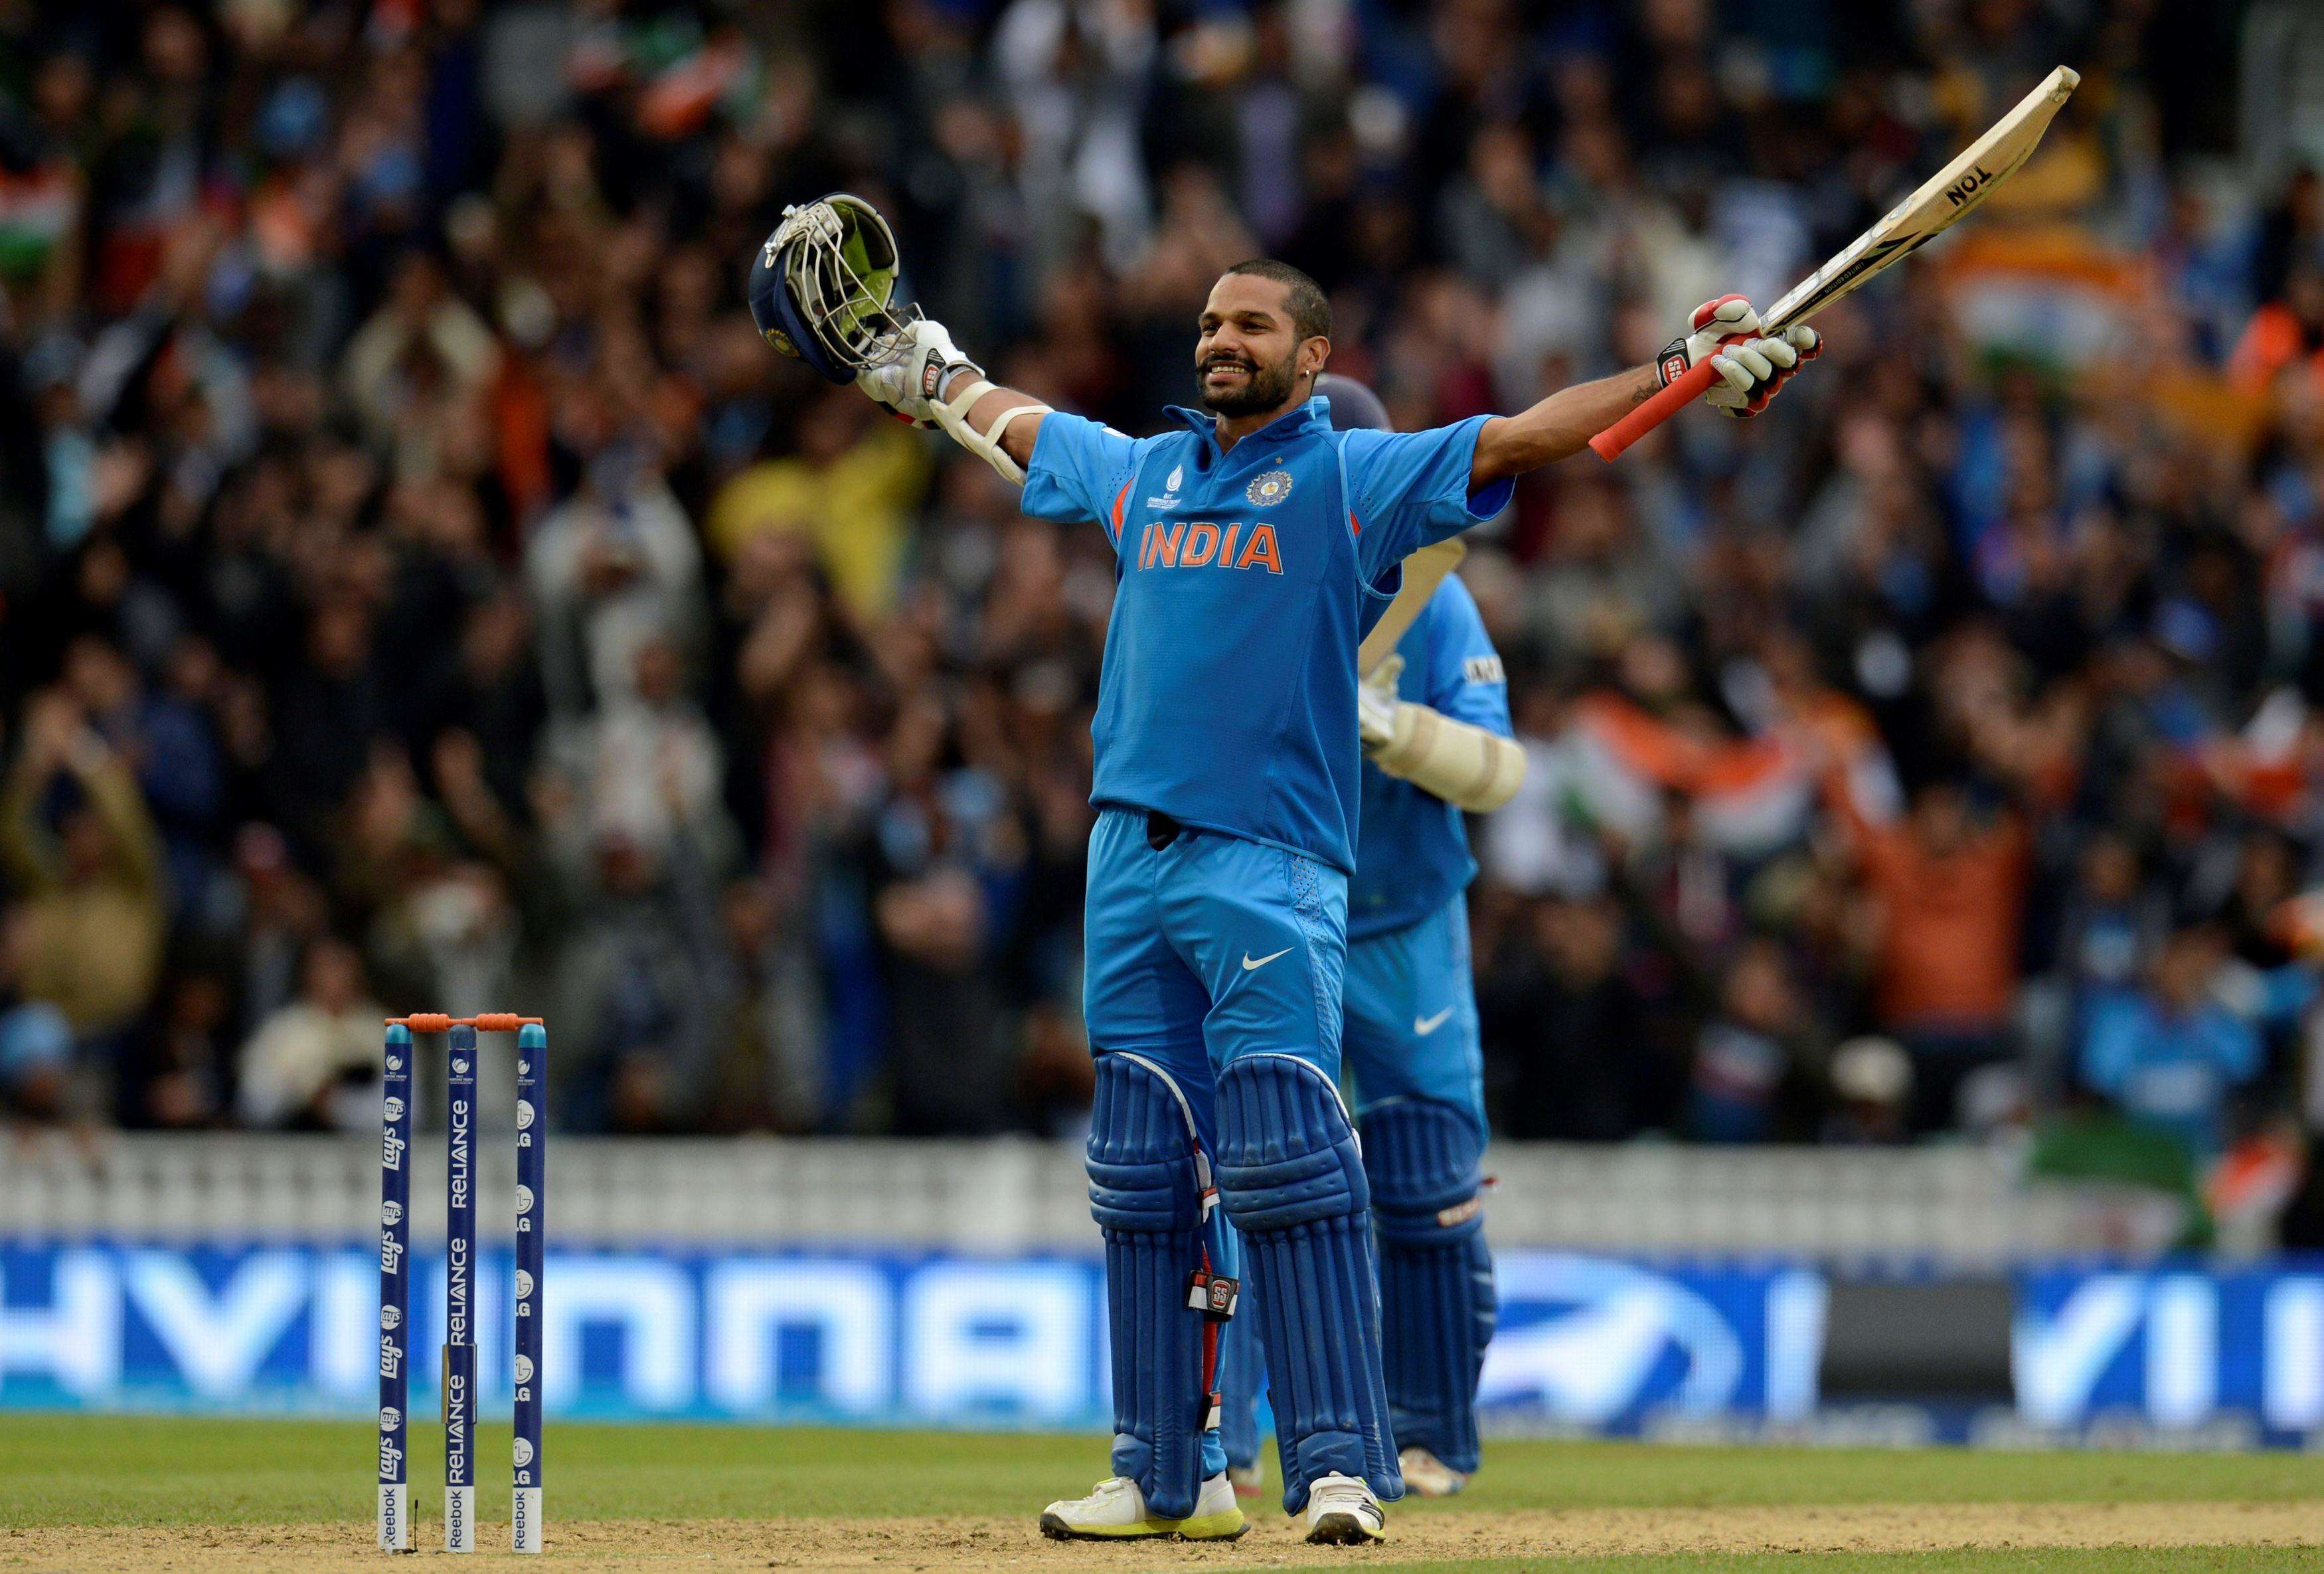 IND vs PAK: मैन ऑफ द मैच बने शिखर धवन, बताया क्या था टीम इंडिया की जीत का प्लान